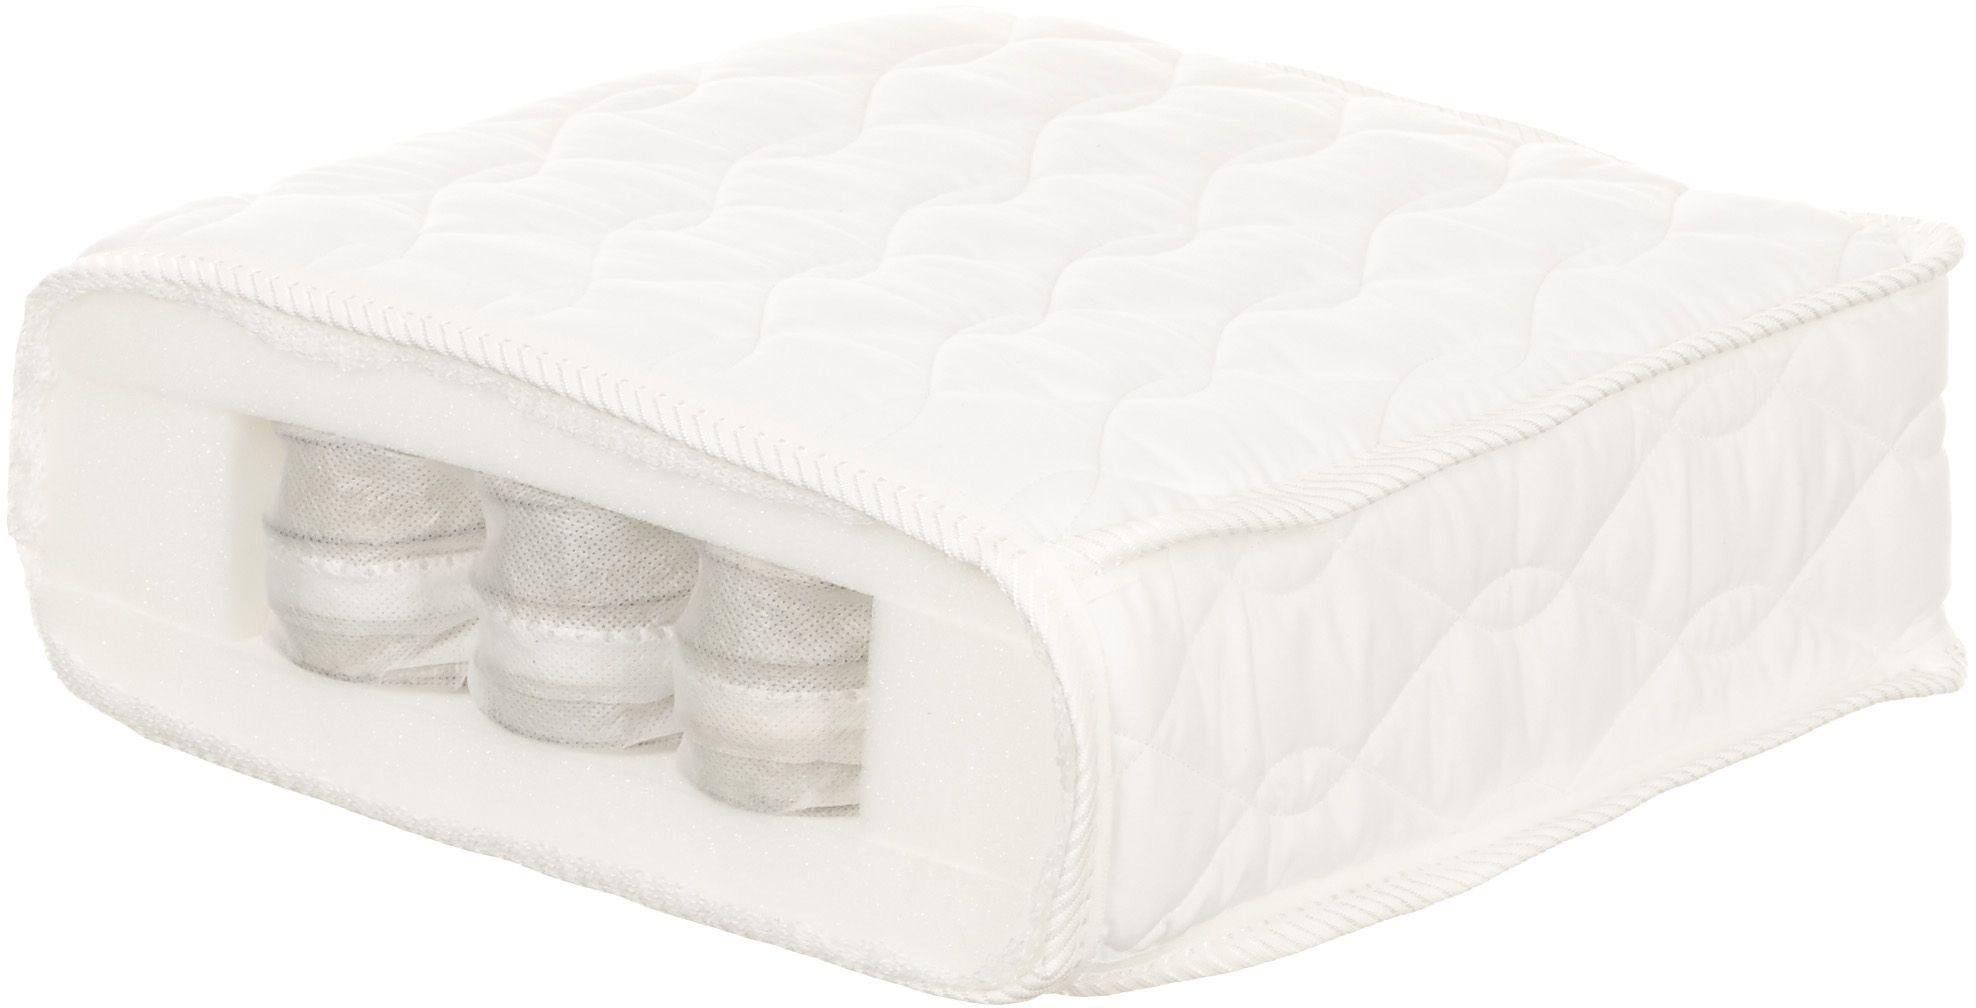 argos baby mattress